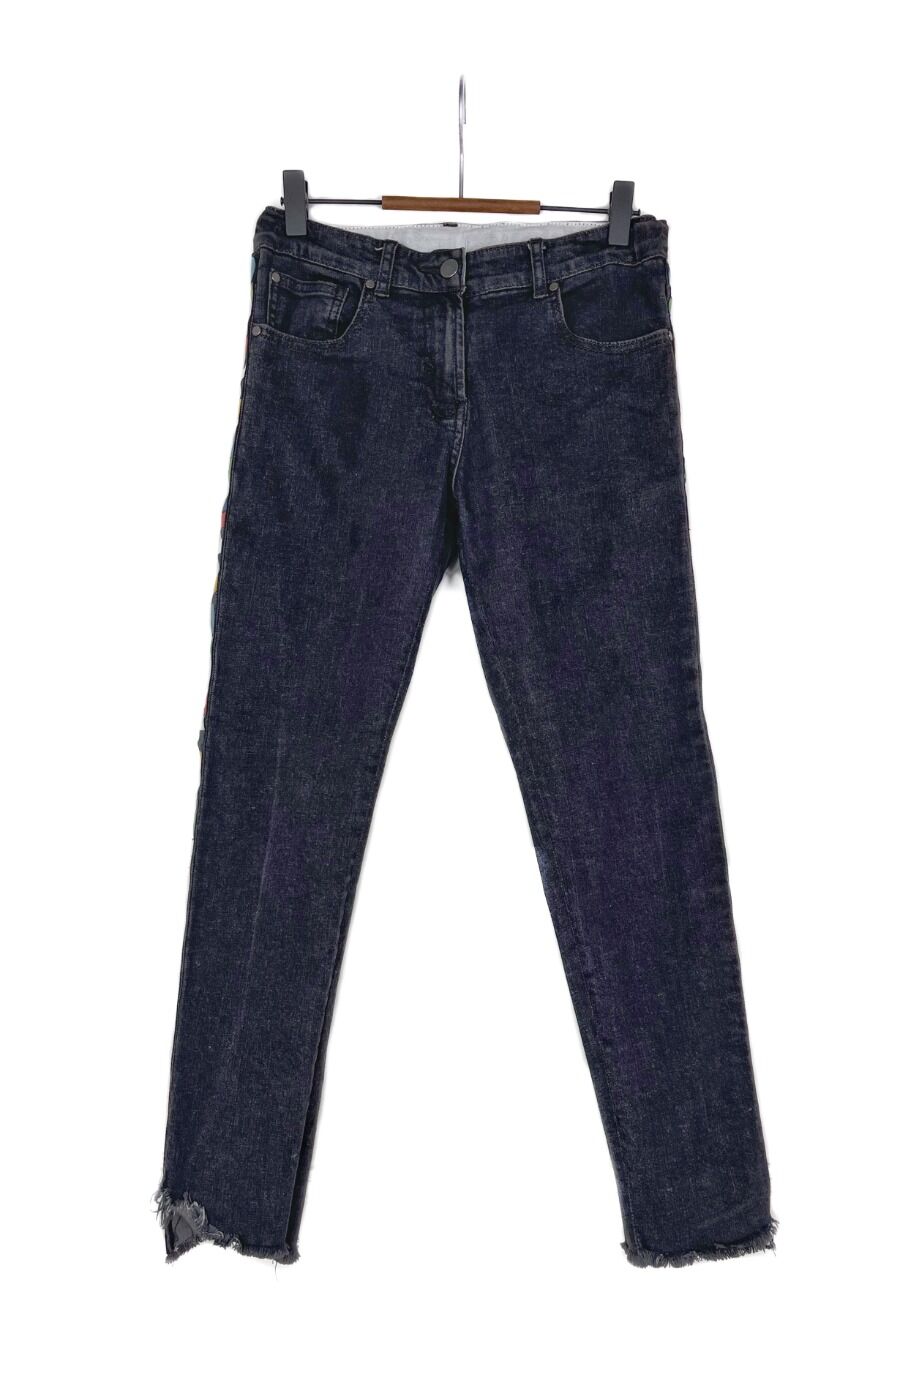 image 1 Детские джинсы темно-серого цвета с надписями на лампасах